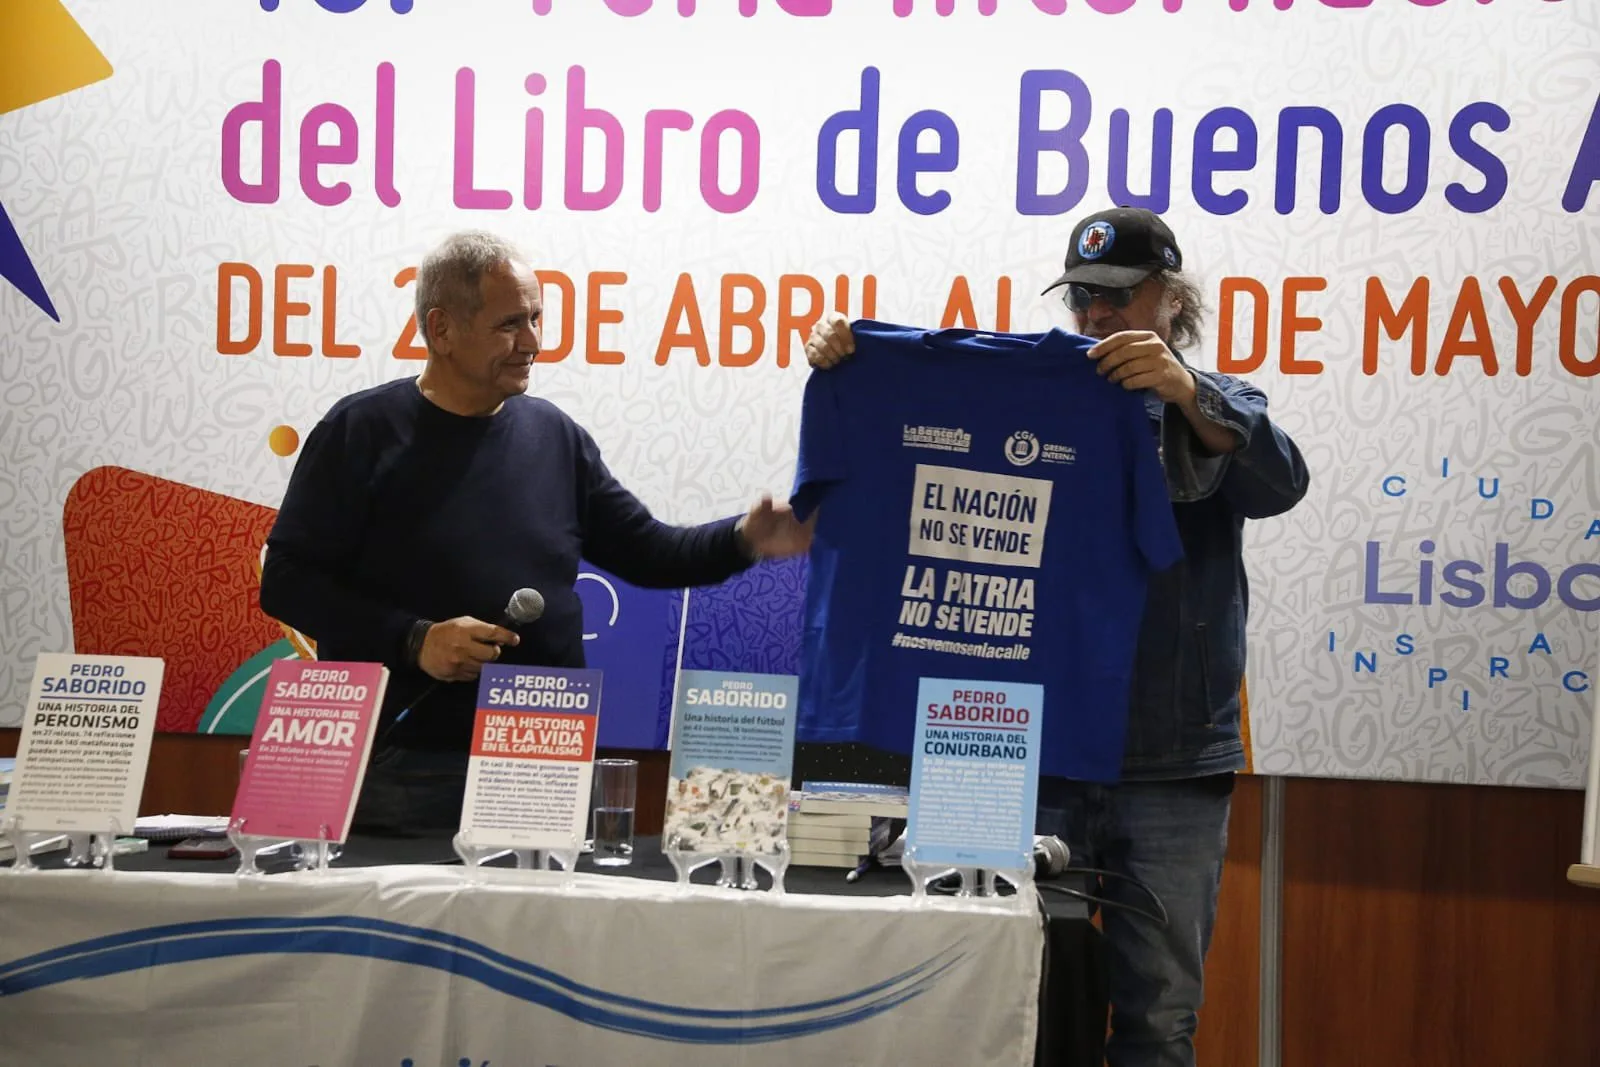 Charla de Pedro Saborido en la Feria del Libro